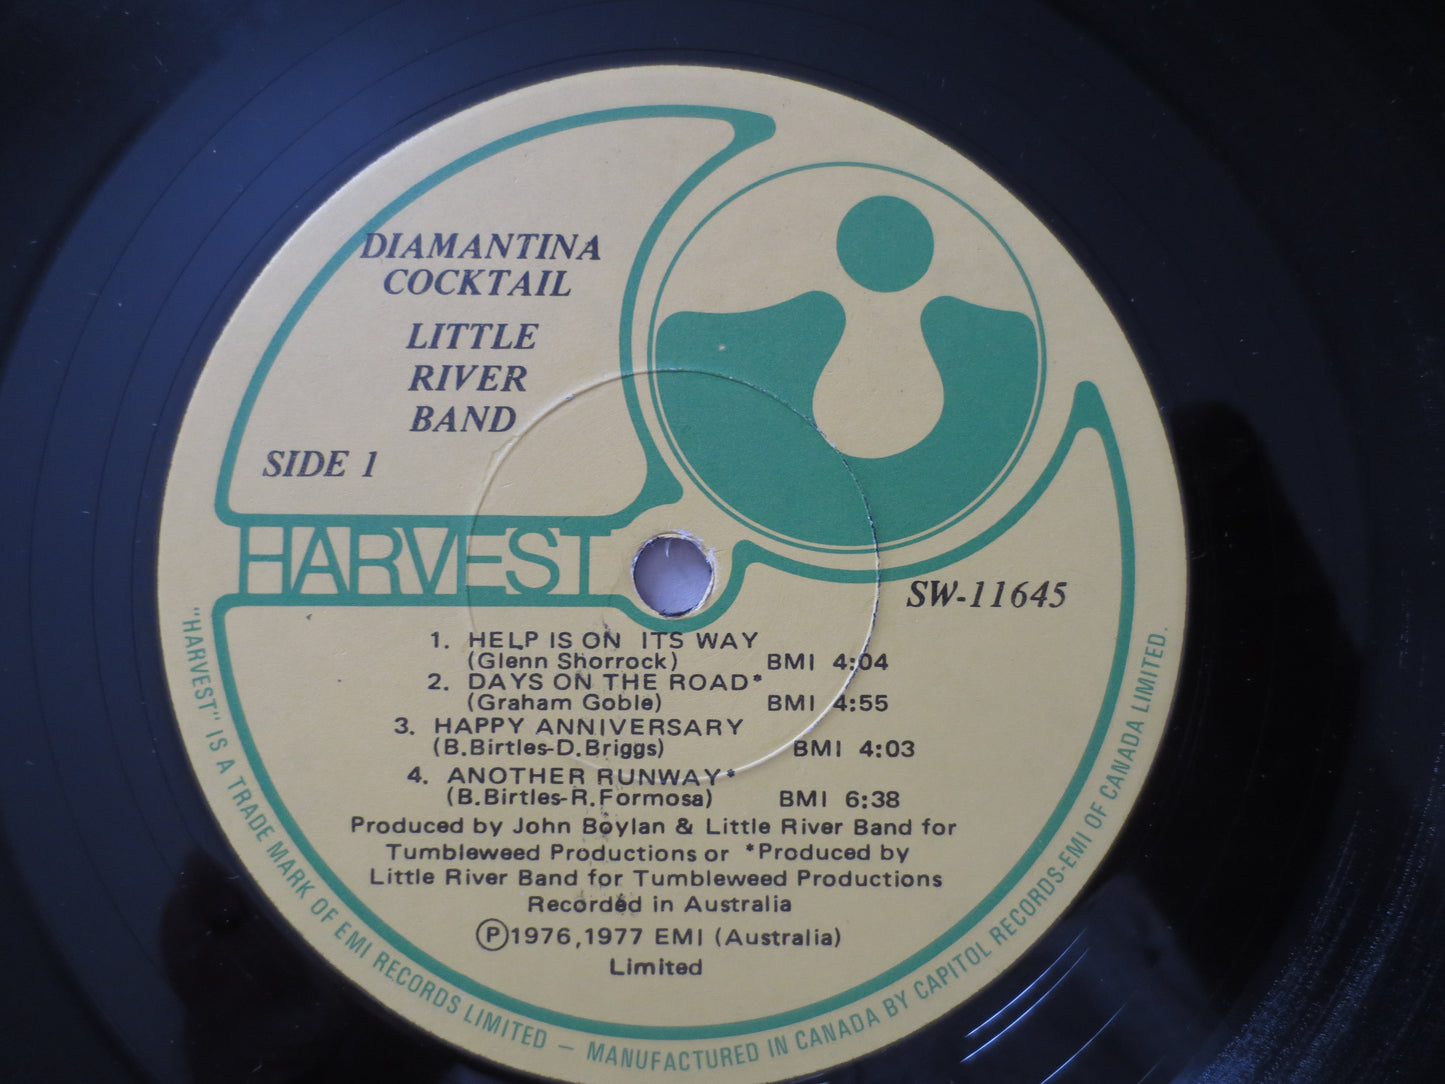 LITTLE RIVER Band, Diamantina COCKTAIL, Vintage Vinyl, Record Vinyl, Records, Rock Records, Vinyl Records, Lp, 1976 Records